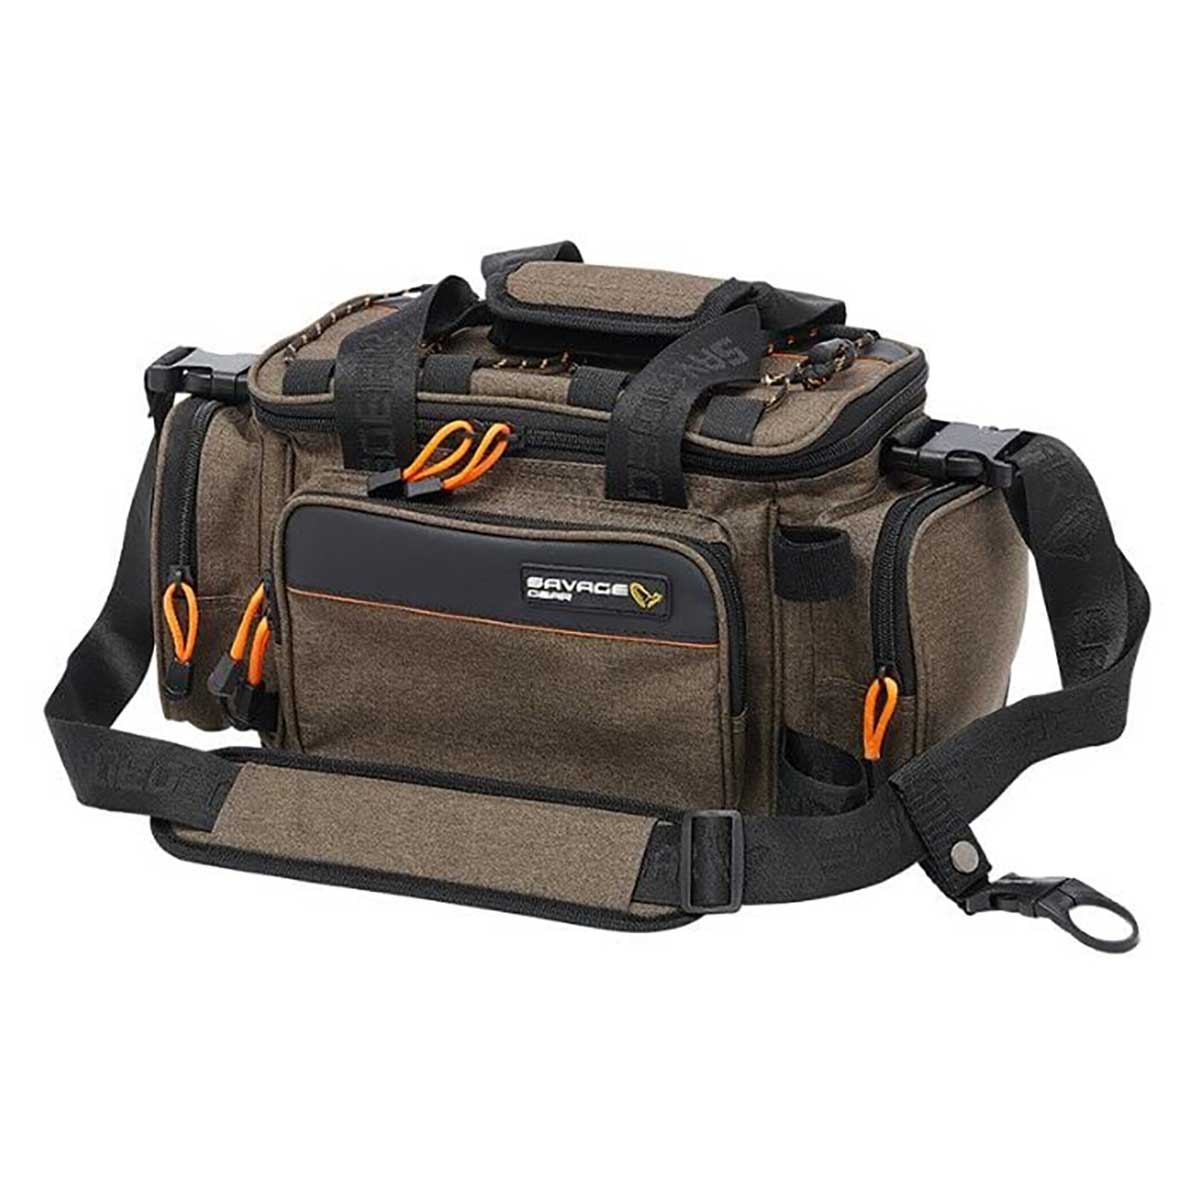 Savage Gear Specialist Soft Lure Bag 1 Box 10 Bags 21X38X22cm 10 Lt Çanta,savage gear kalitesinde kutuları ile birlikte 10lt balıkçı çantası